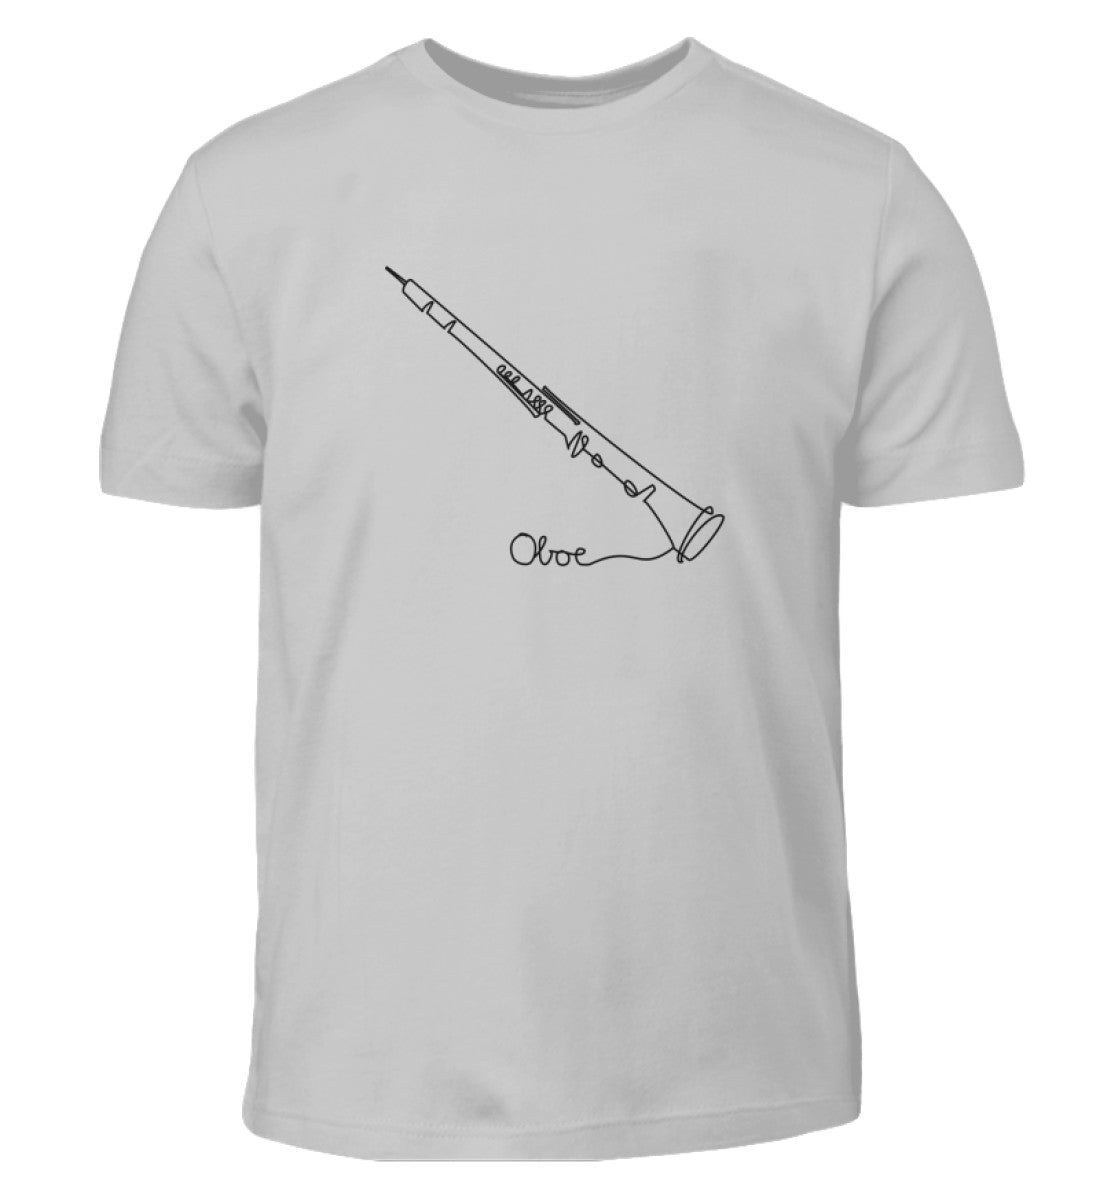 Oboe Kinder T-Shirt